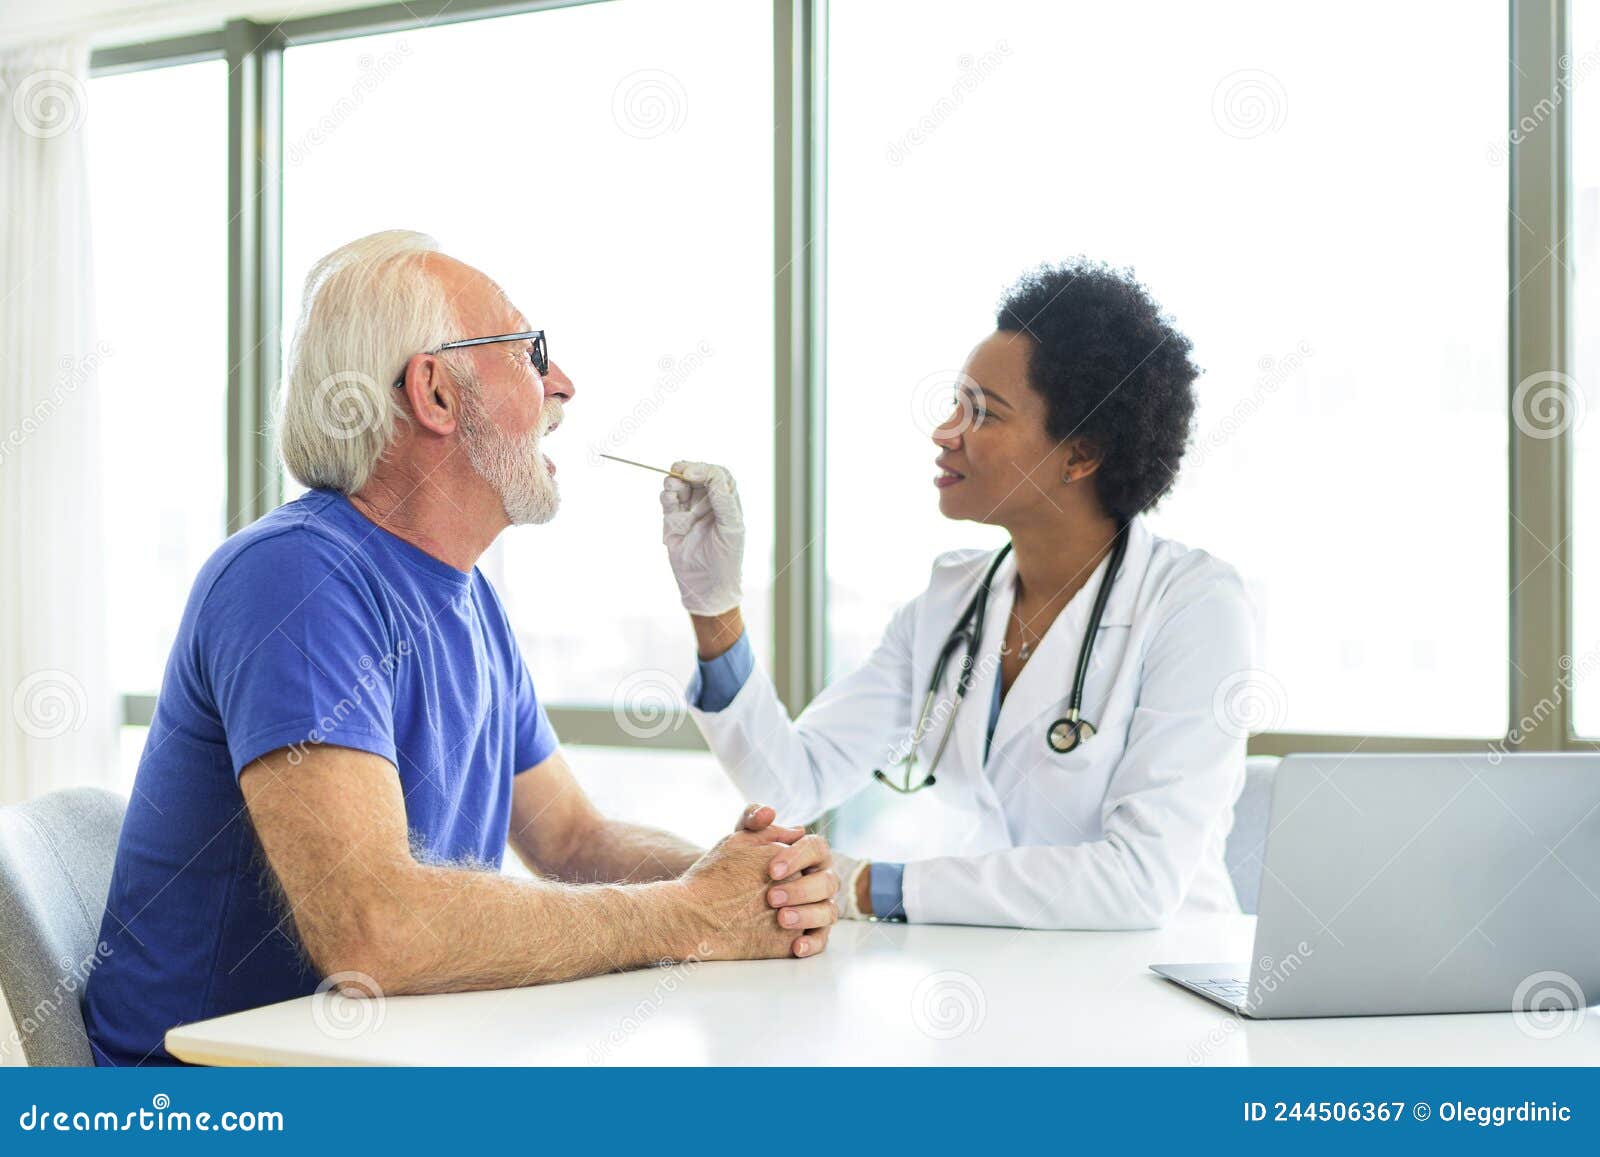 男性病人在诊所的女性验光师医生看诊病人图片下载 - 觅知网